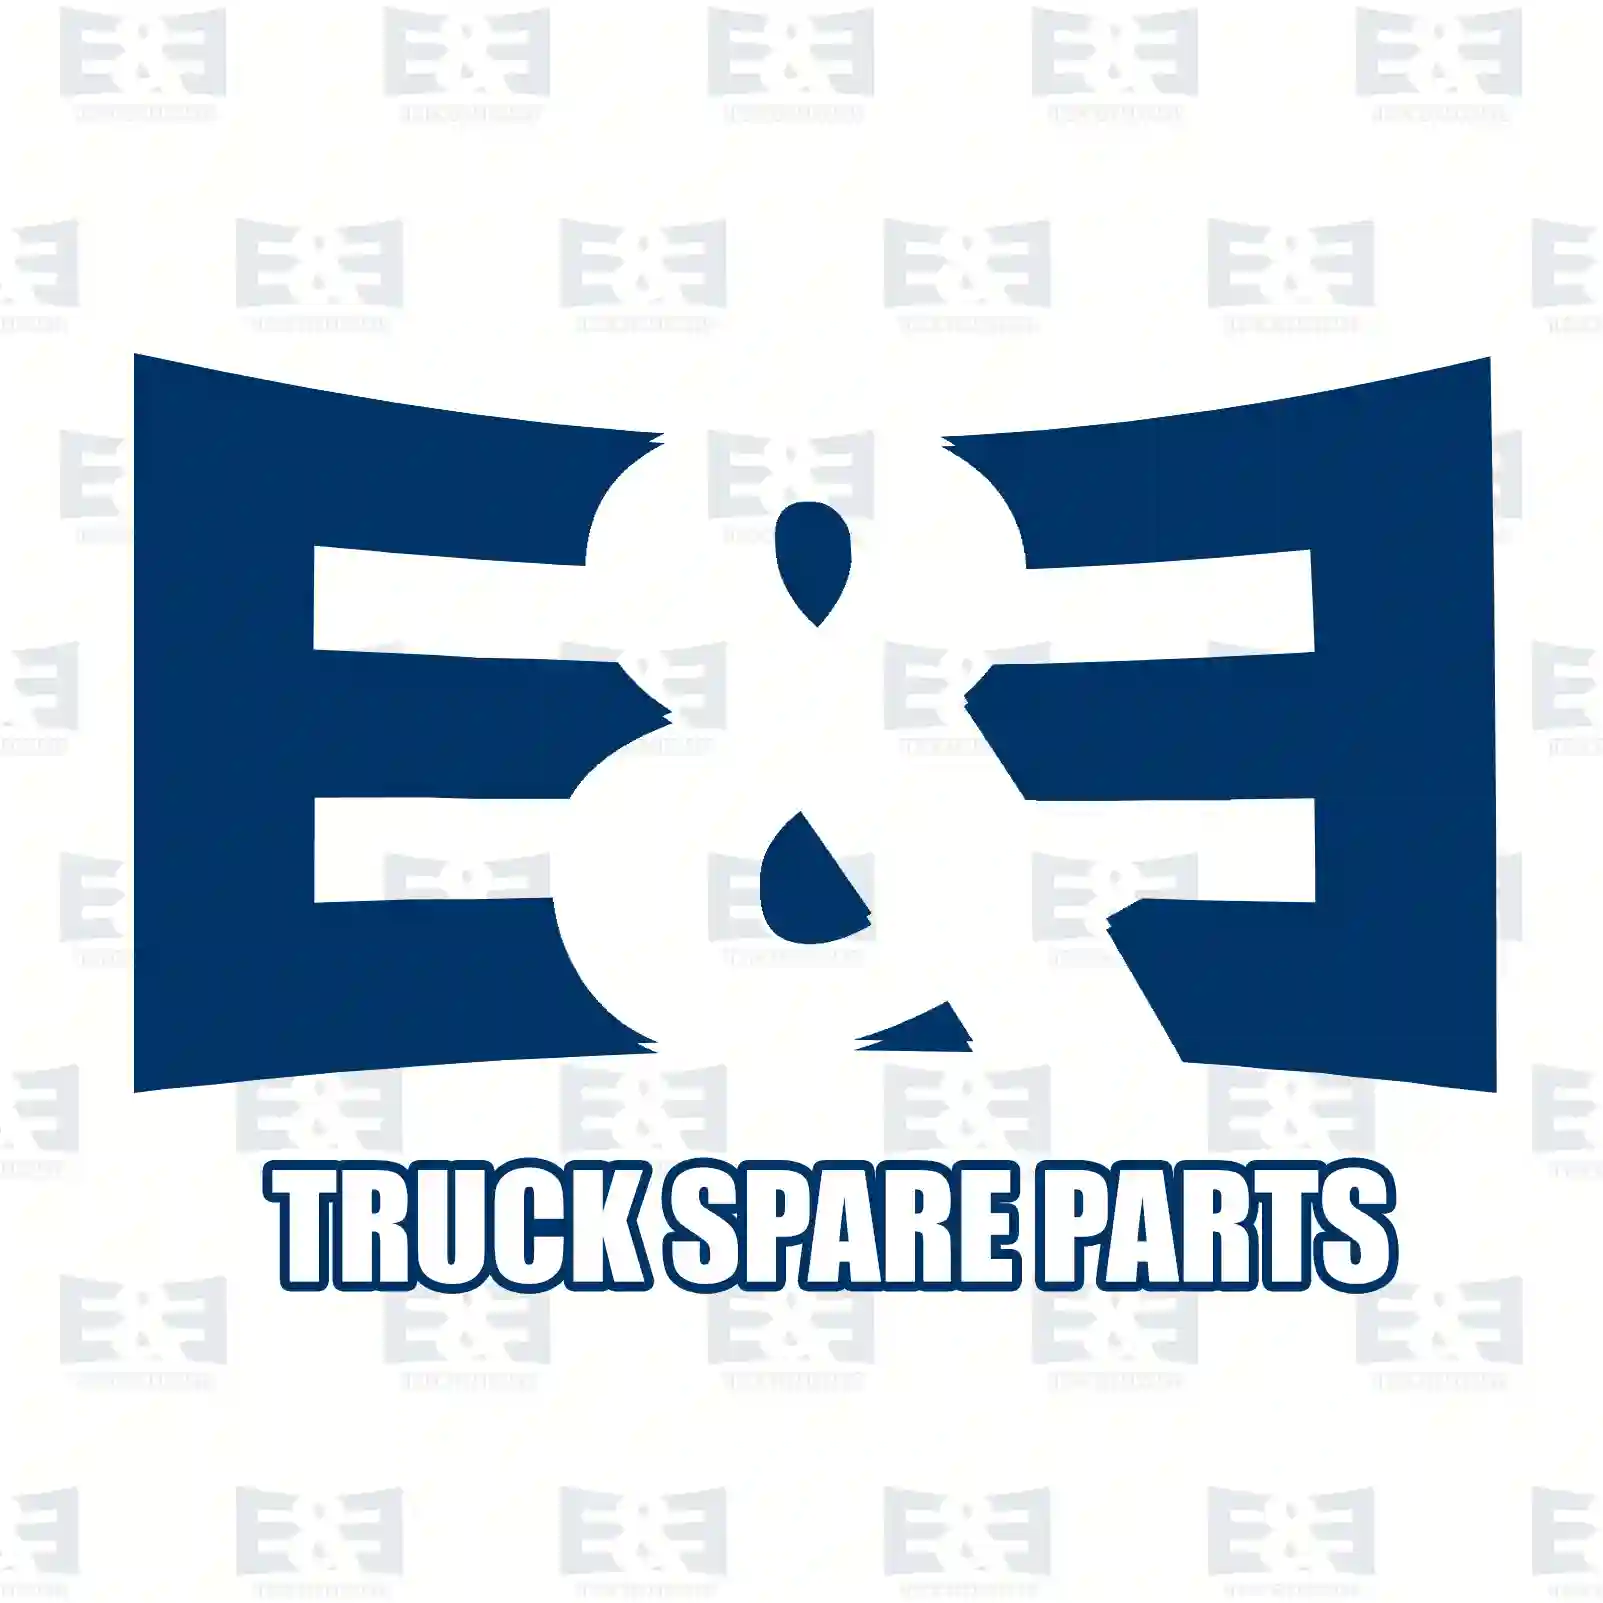 Wiper motor, 2E2292569, 1079510, 1097546, 1666654, 6818241, 6922648, 93BB-17B571-AA, 93BB-17B571-AB, 93BB-17B571-AC, 93BB-17B571-AD, XS71-17B571-AA ||  2E2292569 E&E Truck Spare Parts | Truck Spare Parts, Auotomotive Spare Parts Wiper motor, 2E2292569, 1079510, 1097546, 1666654, 6818241, 6922648, 93BB-17B571-AA, 93BB-17B571-AB, 93BB-17B571-AC, 93BB-17B571-AD, XS71-17B571-AA ||  2E2292569 E&E Truck Spare Parts | Truck Spare Parts, Auotomotive Spare Parts